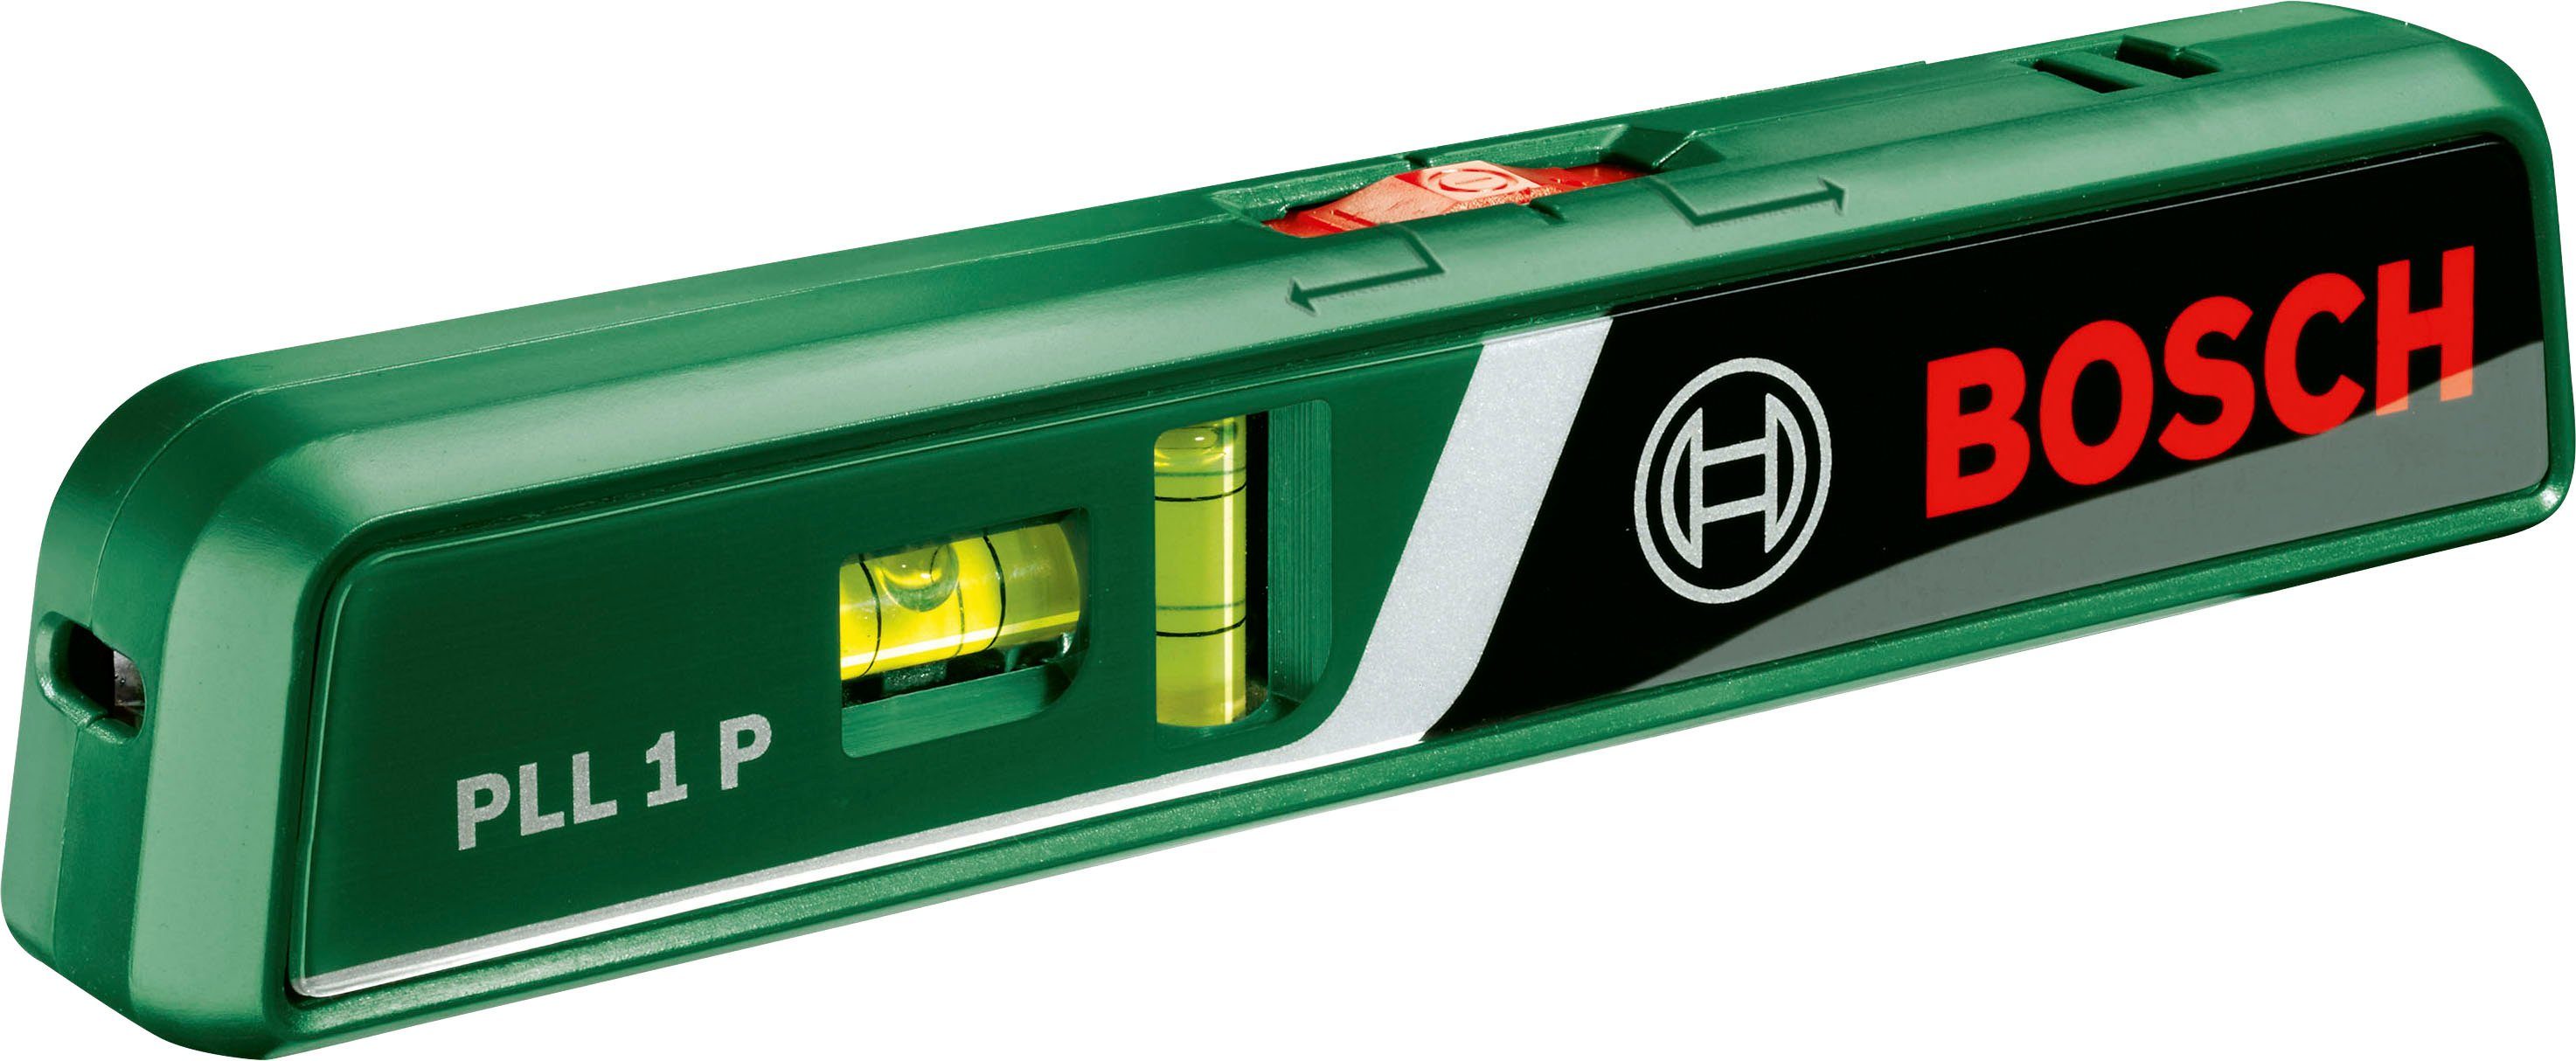 Garden P, PLL Batterien mit & Wasserwaage, Bosch inklusive 1 Lasermessgerät Home